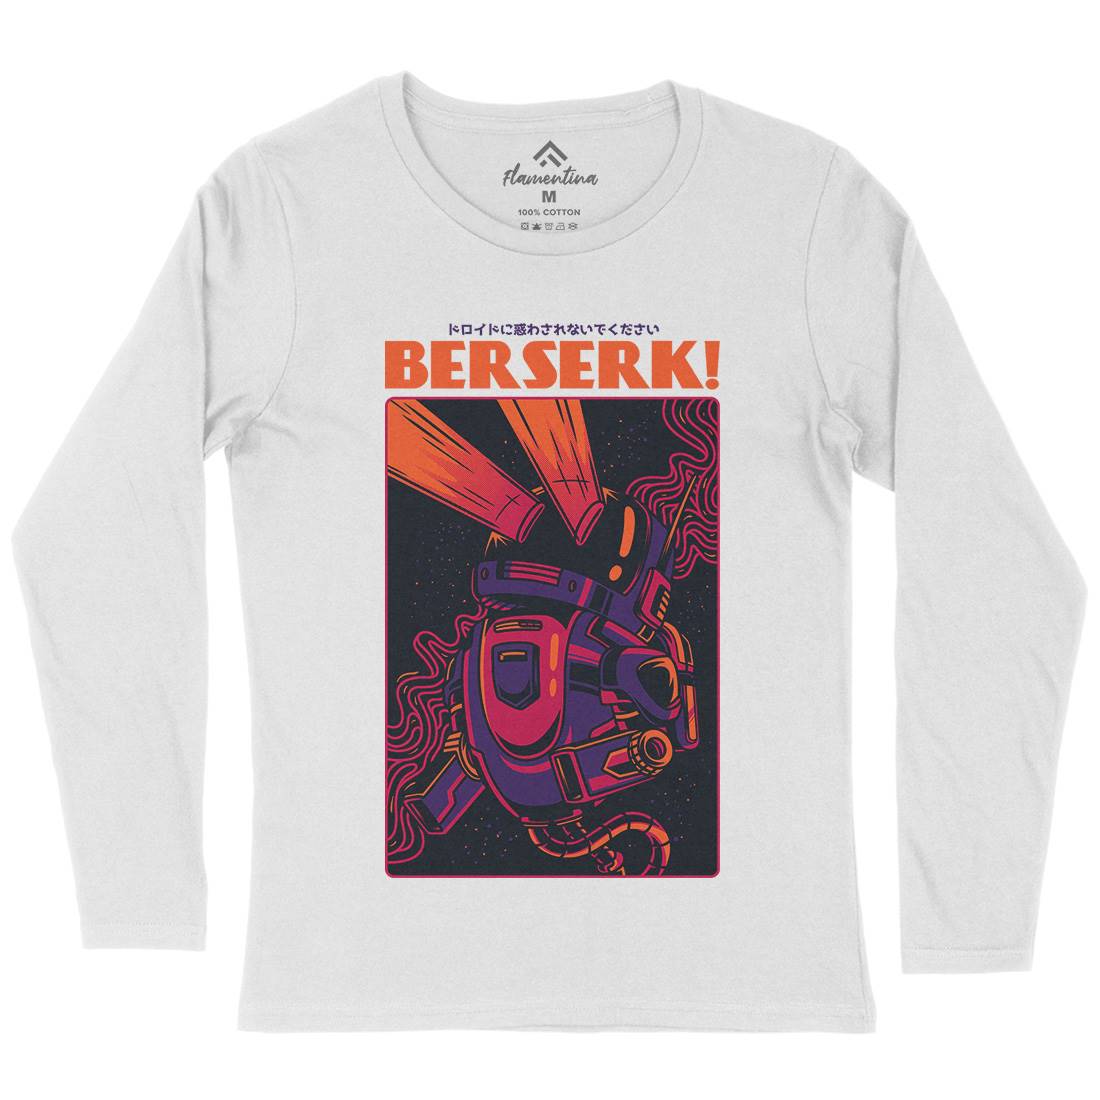 Berserk Womens Long Sleeve T-Shirt Space D713